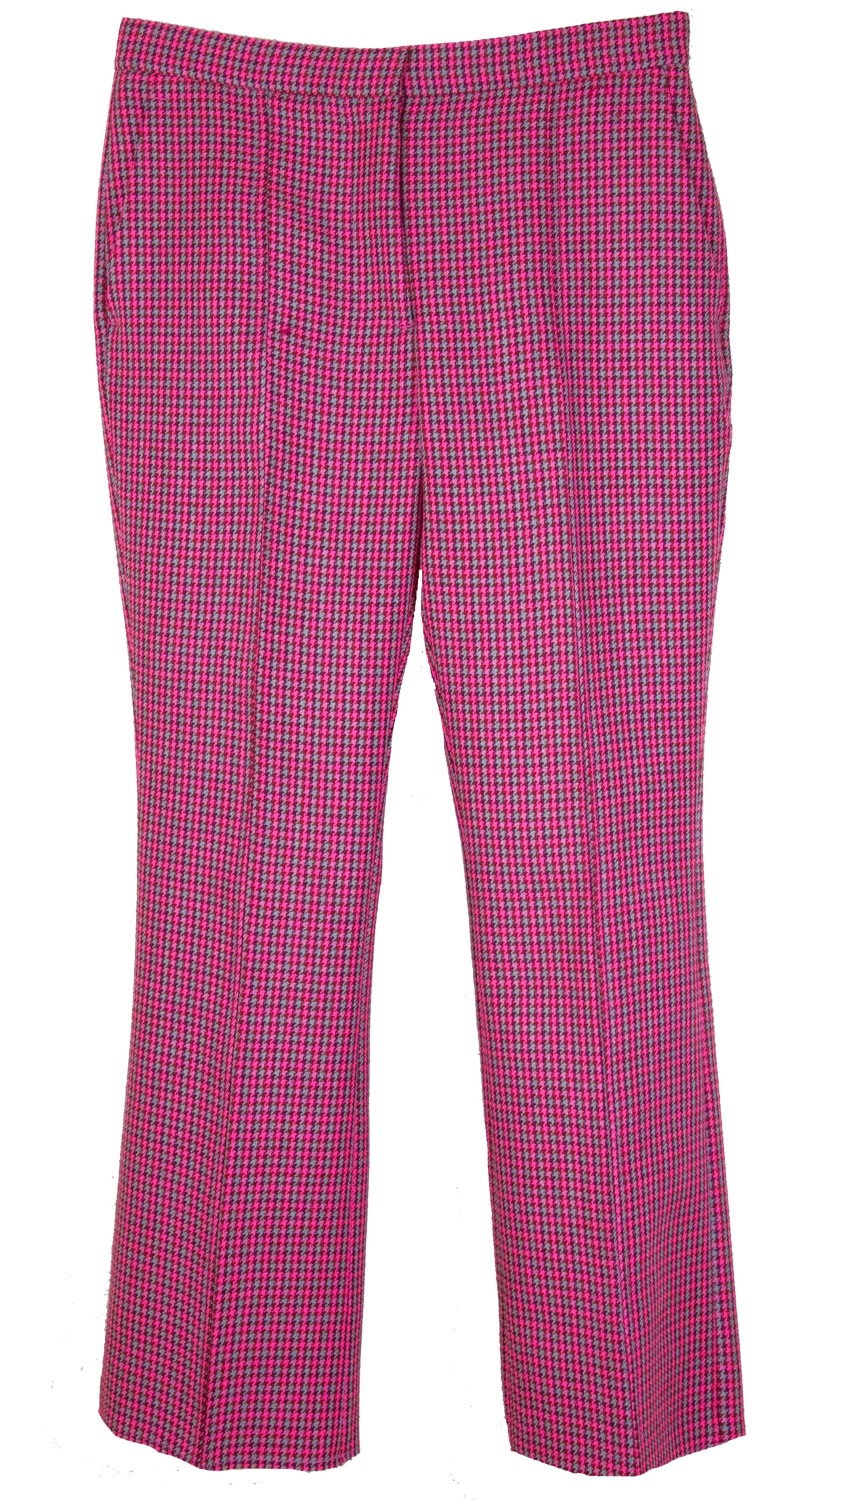 shop MSGM  Pantaloni: Pantalone MSGM a trombetta, a quadretti rosa e grigio, vita regolare, chiusura con bottone e cerniera sul davanti, quattro tasche.

Composizione: 100% lana vergine. number 1032